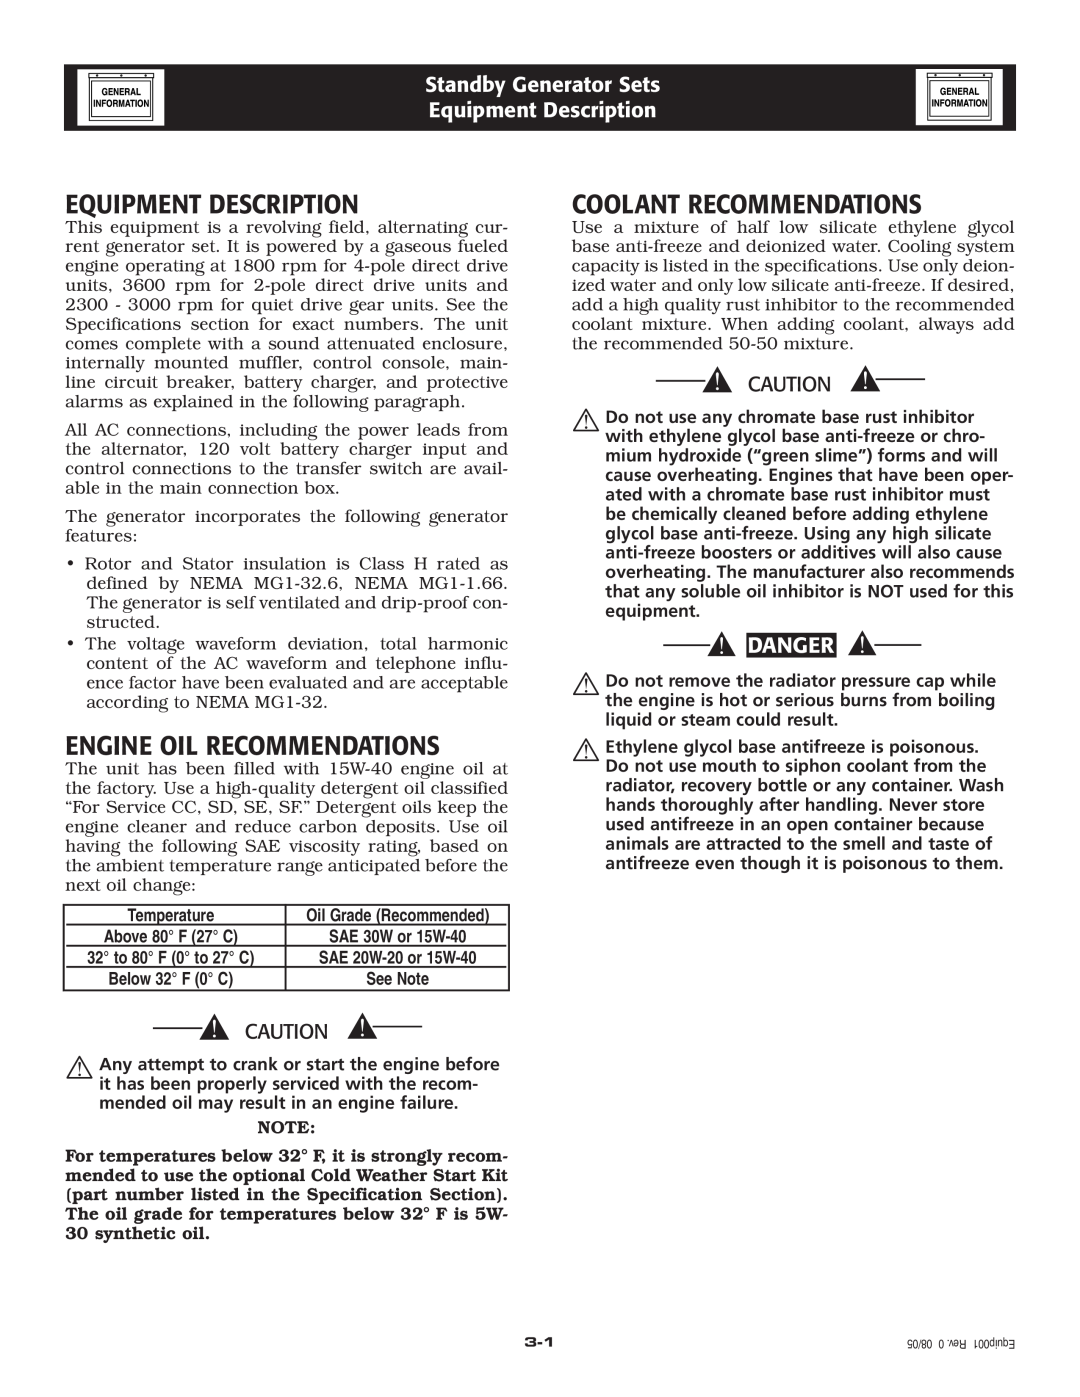 Generac Power Systems 005262-1 Equipment Description, Engine Oil Recommendations, Coolant Recommendations, Danger 